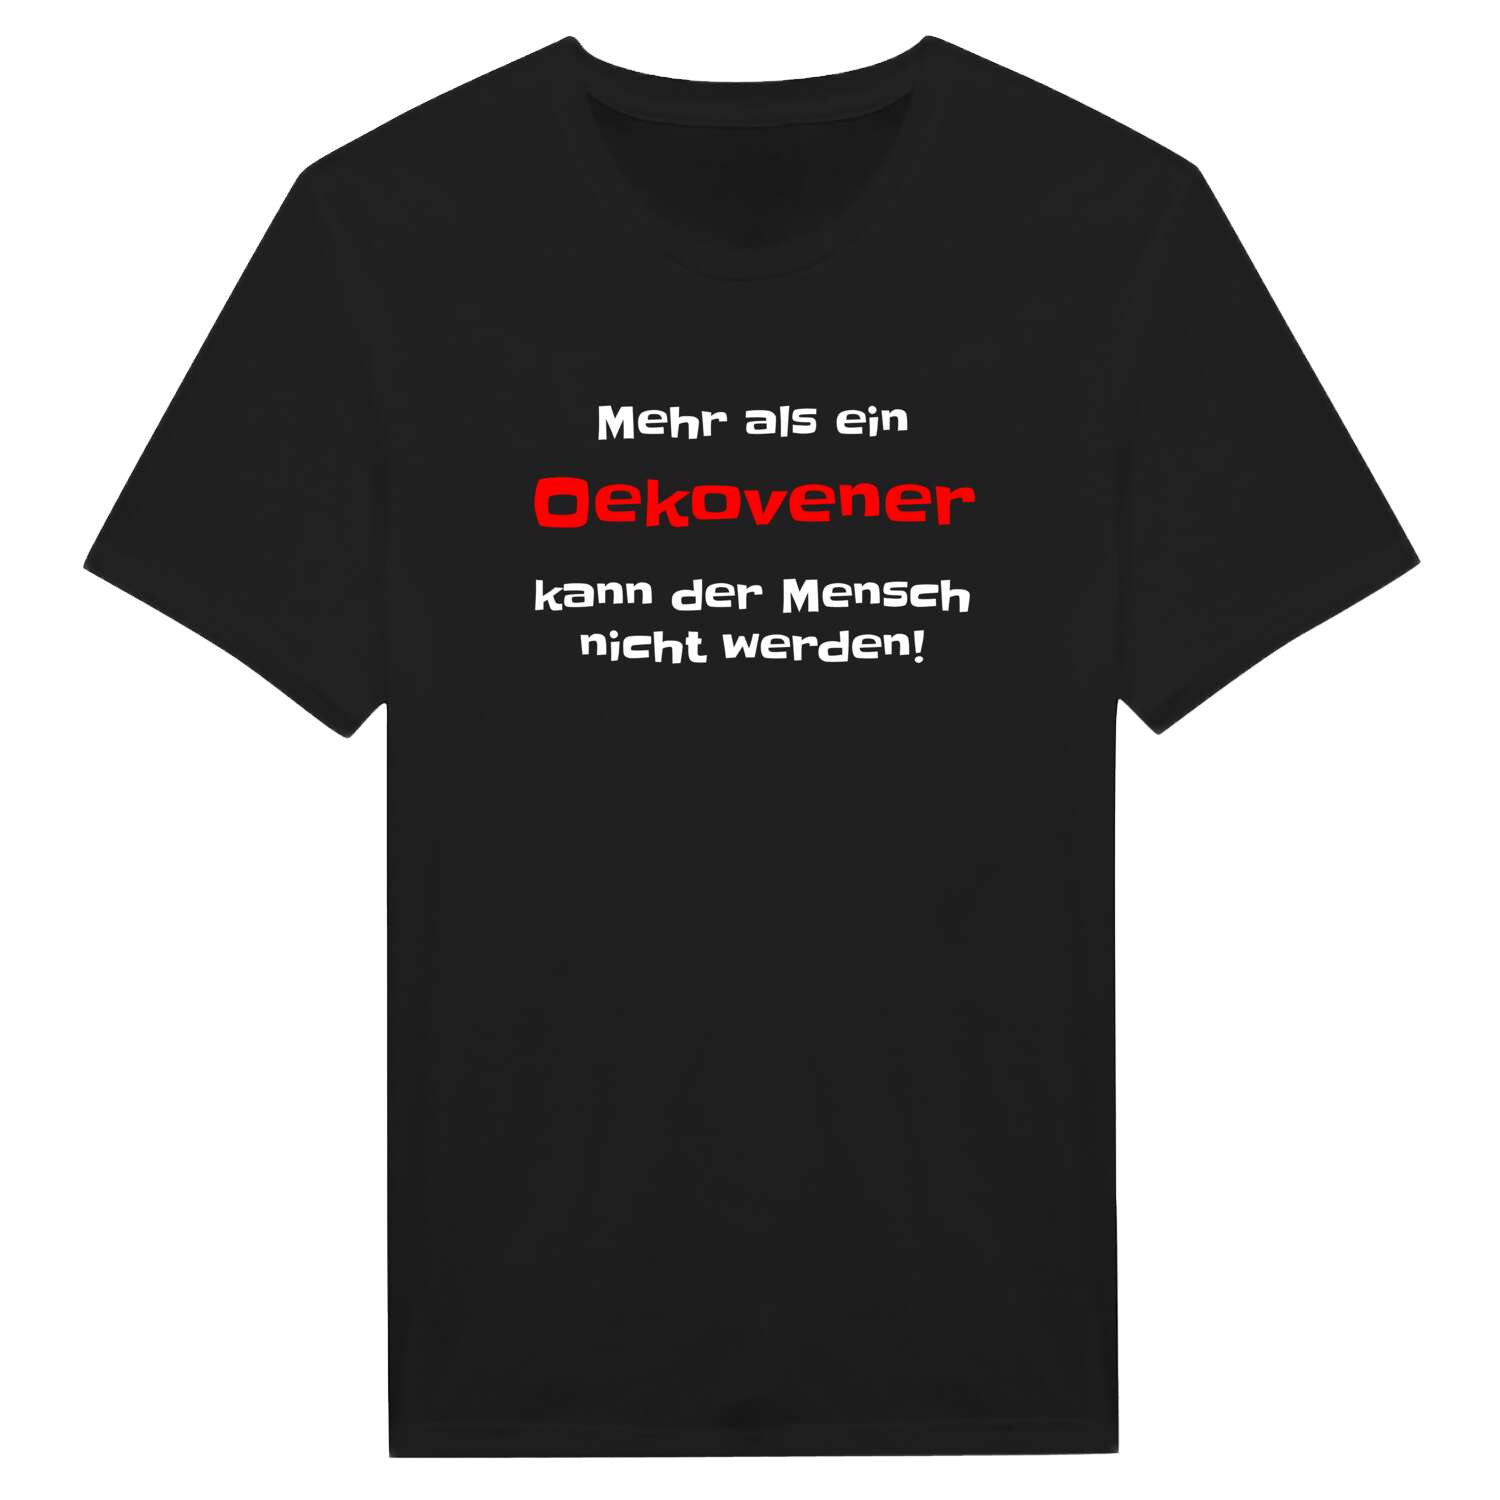 Oekoven T-Shirt »Mehr als ein«